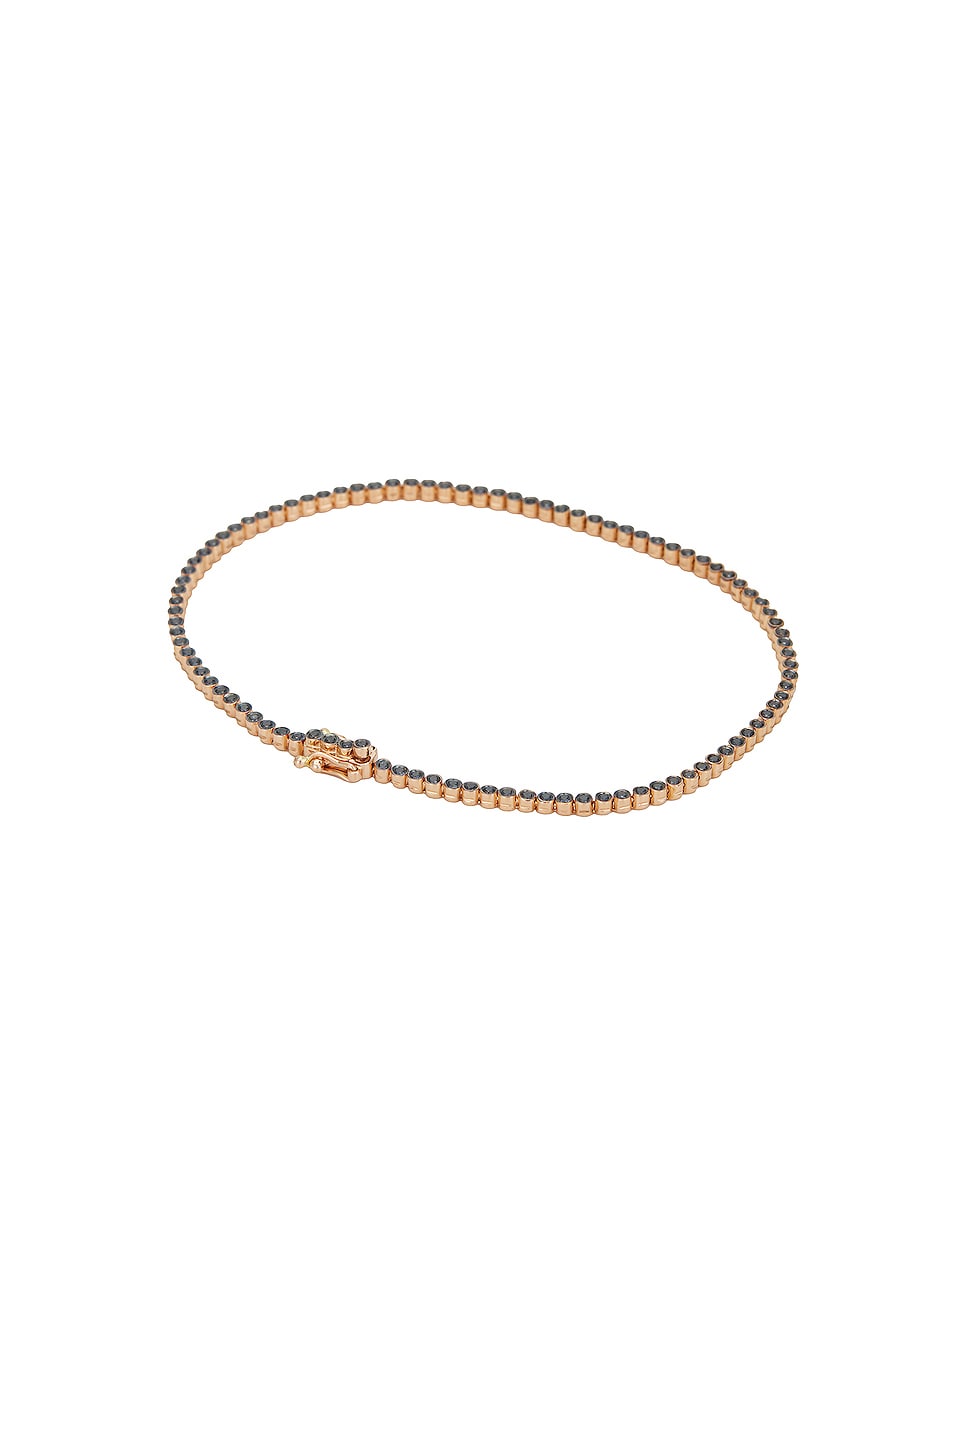 Image 1 of Greg Yuna Small Black Diamond Bracelet in Gold